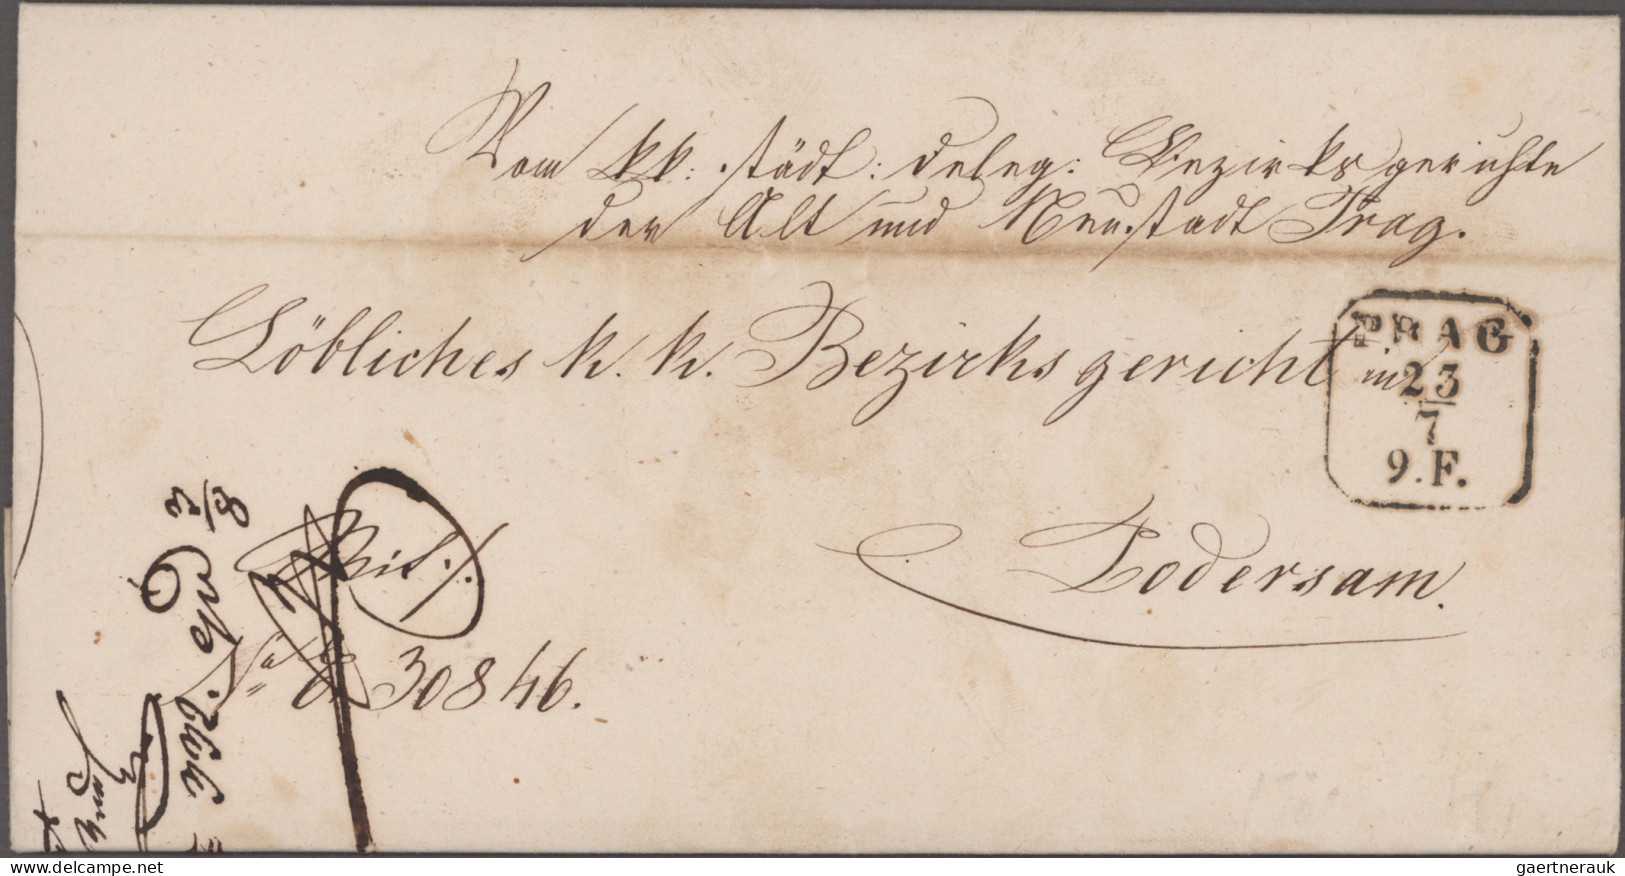 Österreich: 1852/1895, Lot von 8 unfrankierten Belegen "Ex Offo Briefe", dabei z